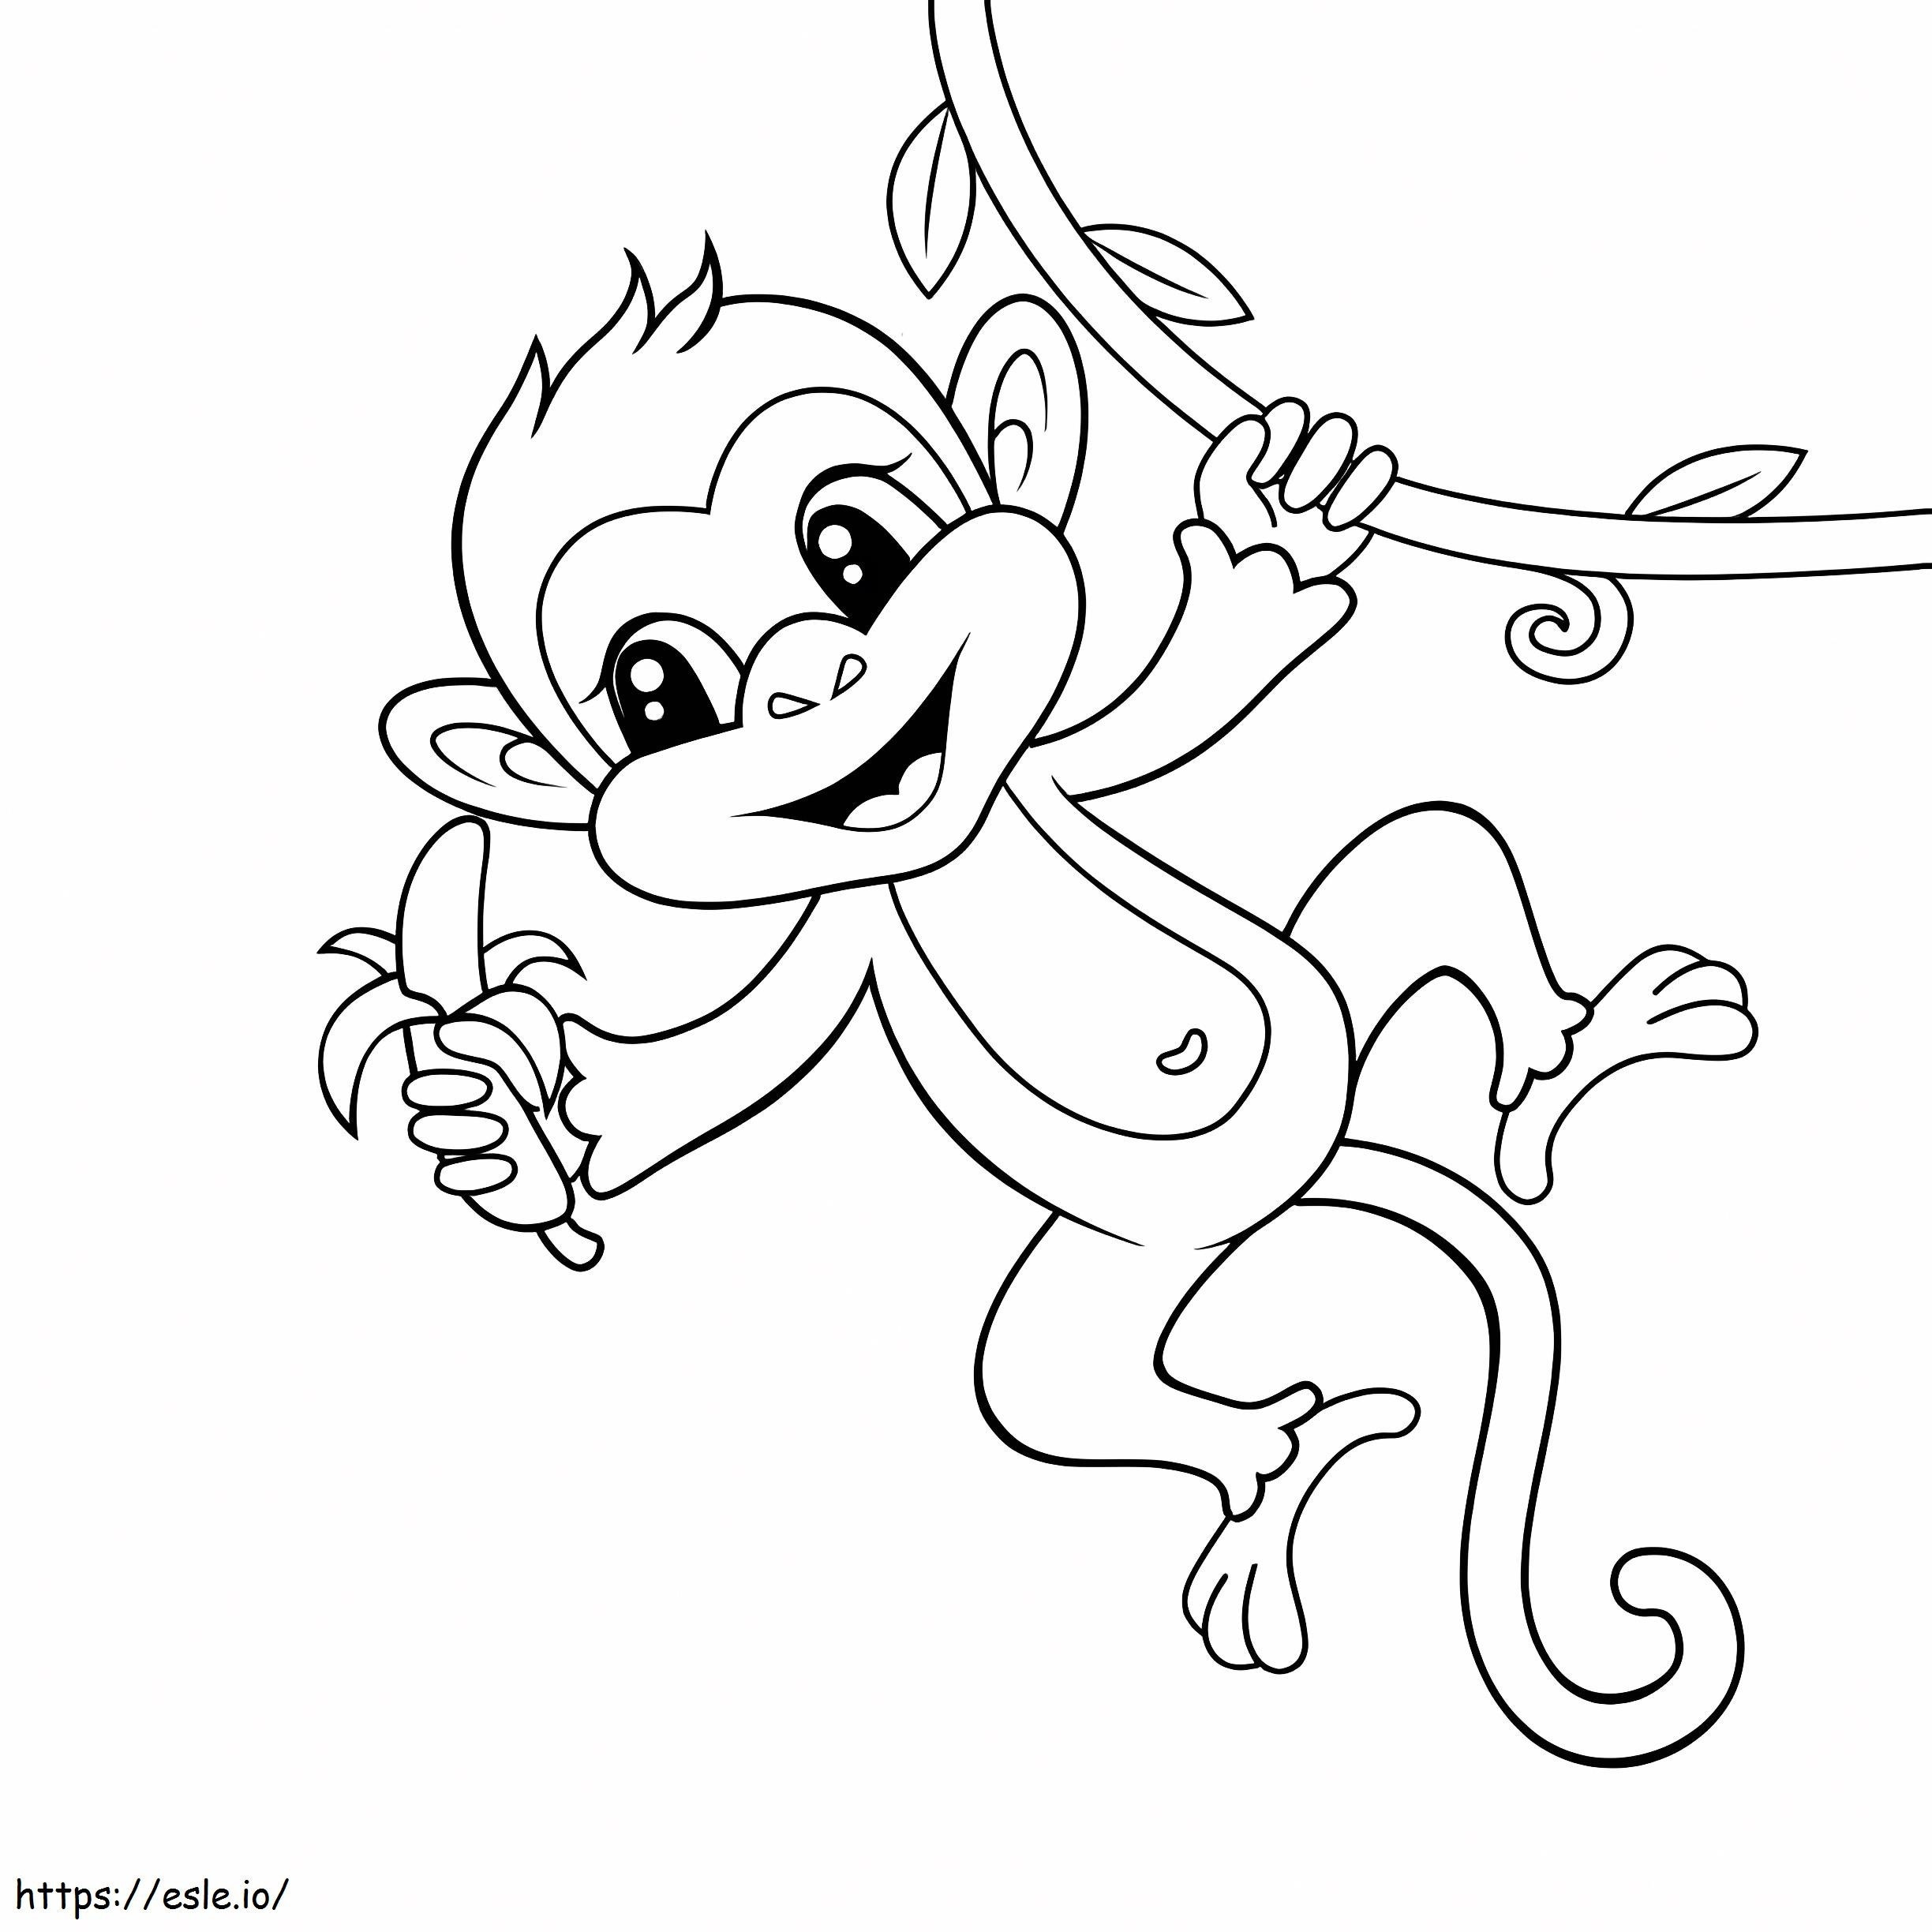 Macaco segurando banana e escalando para colorir